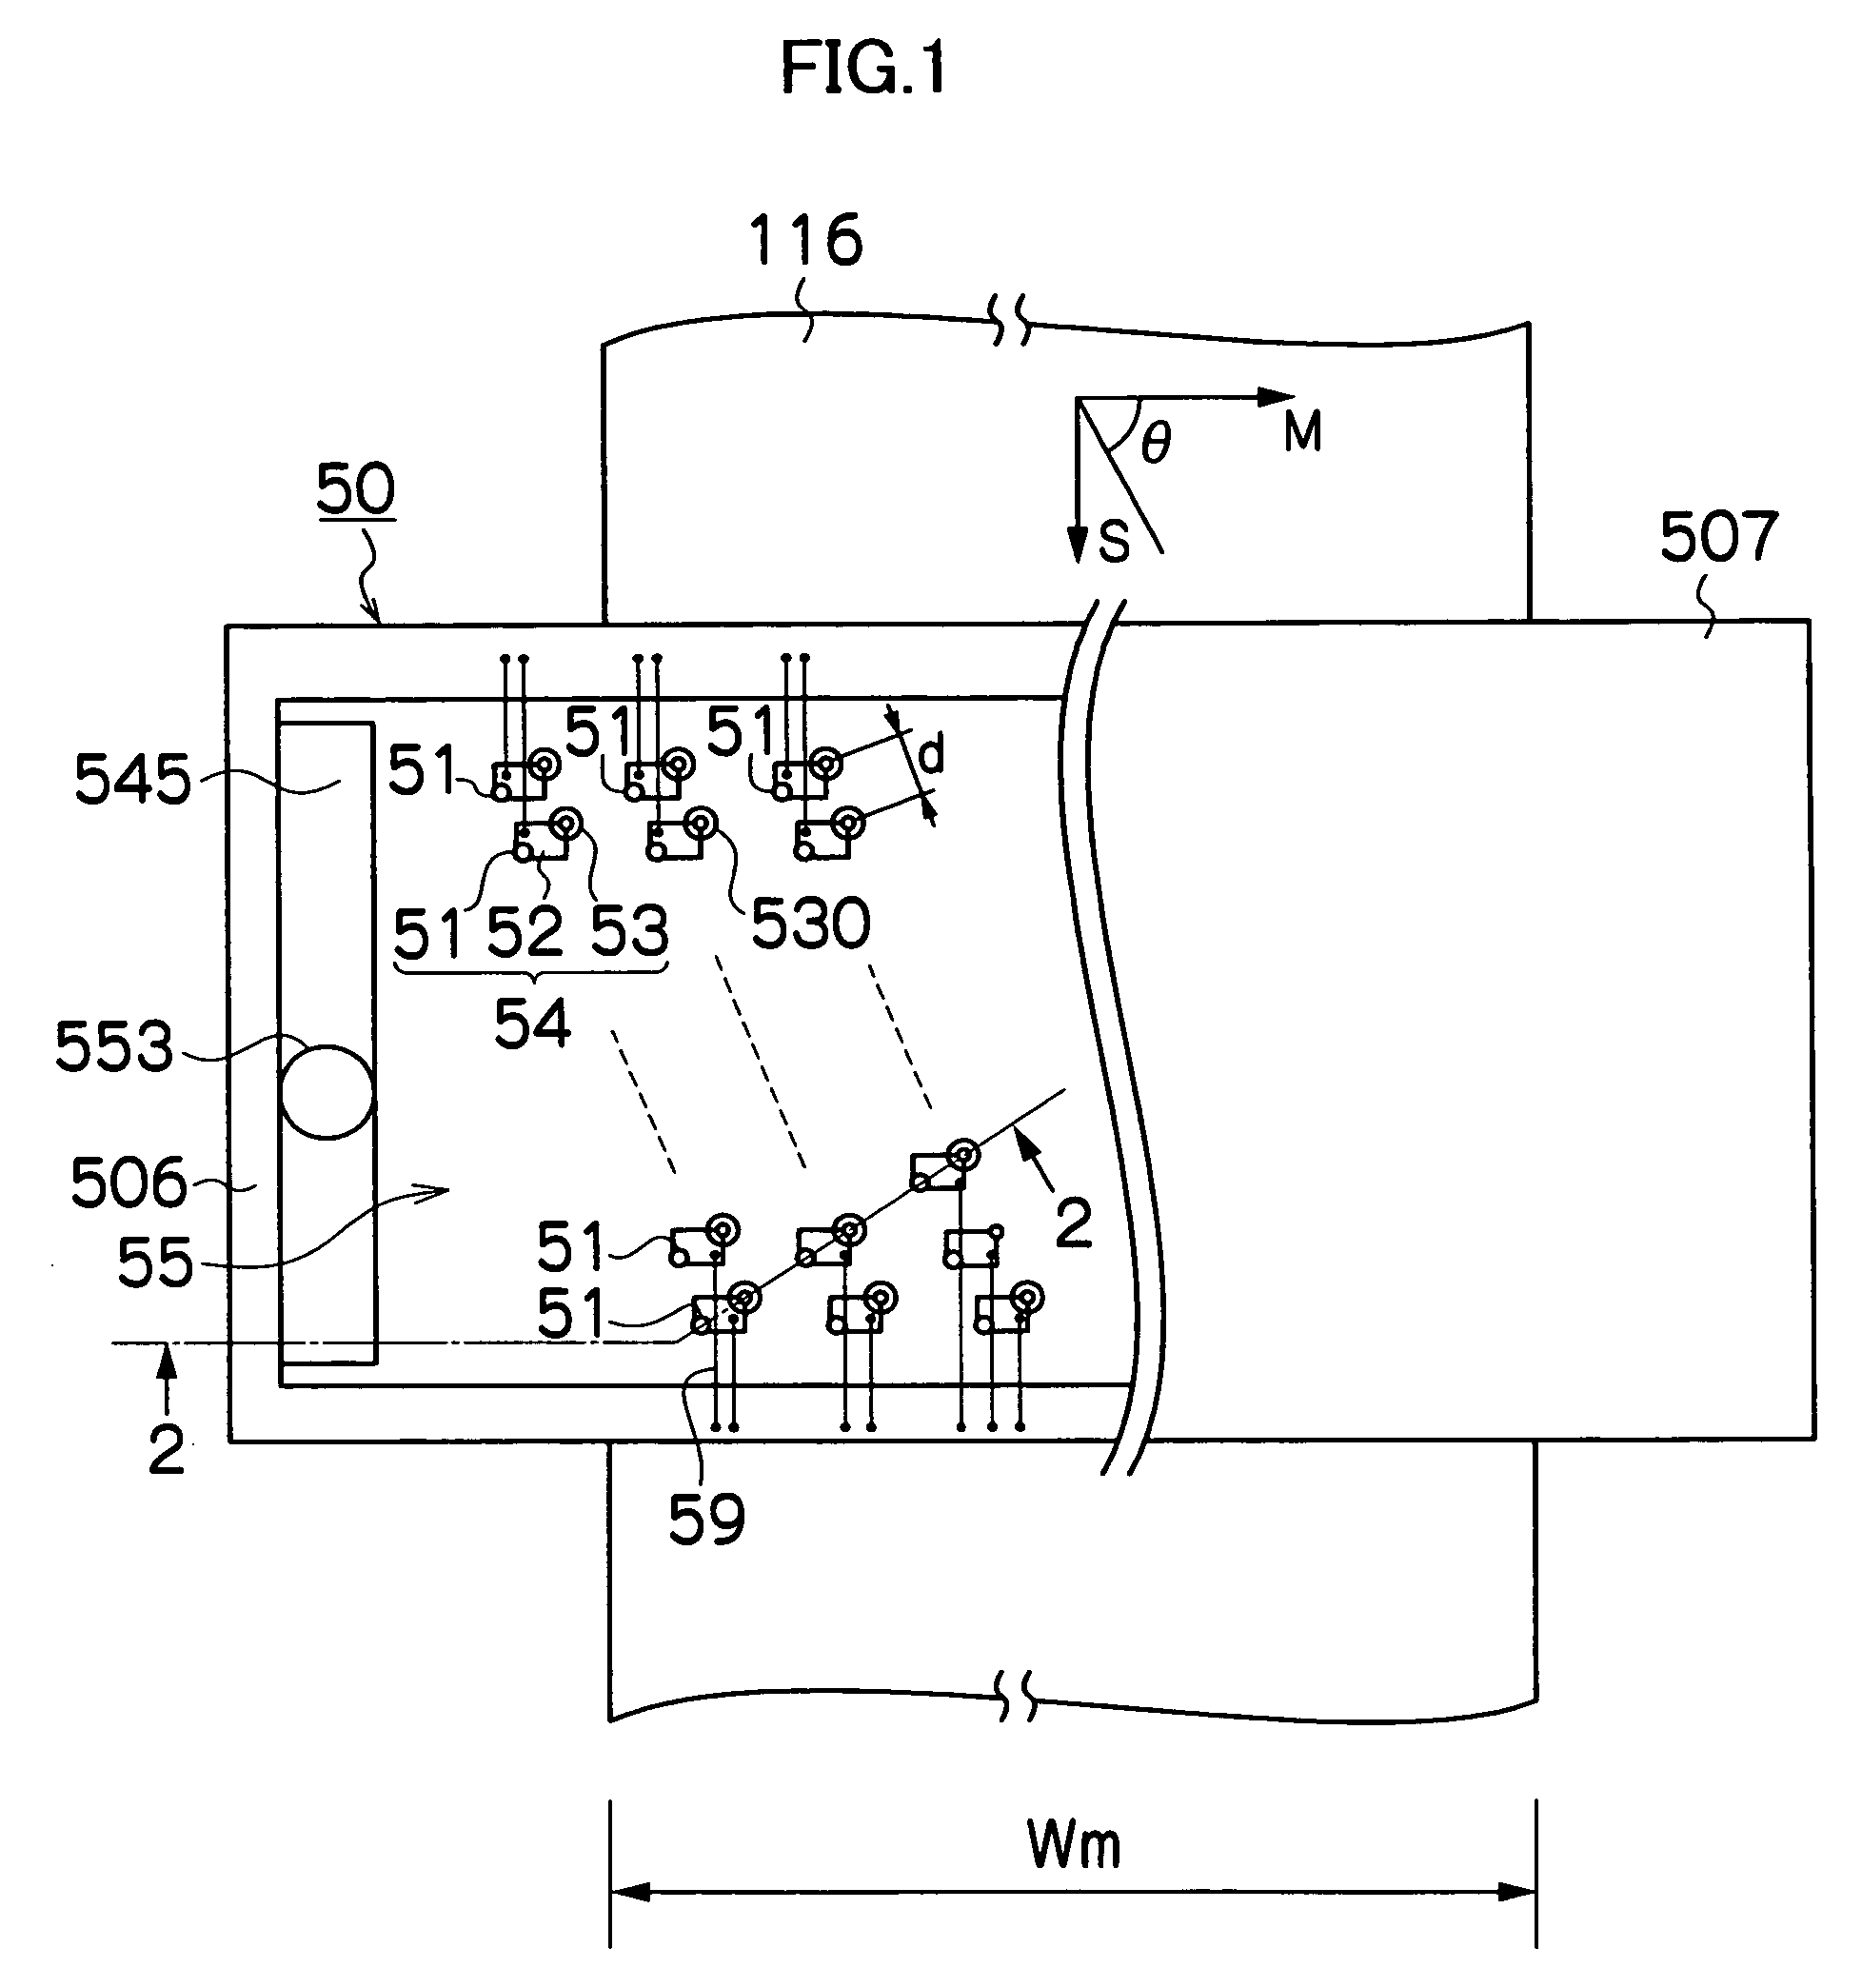 Liquid ejection apparatus and liquid agitation method